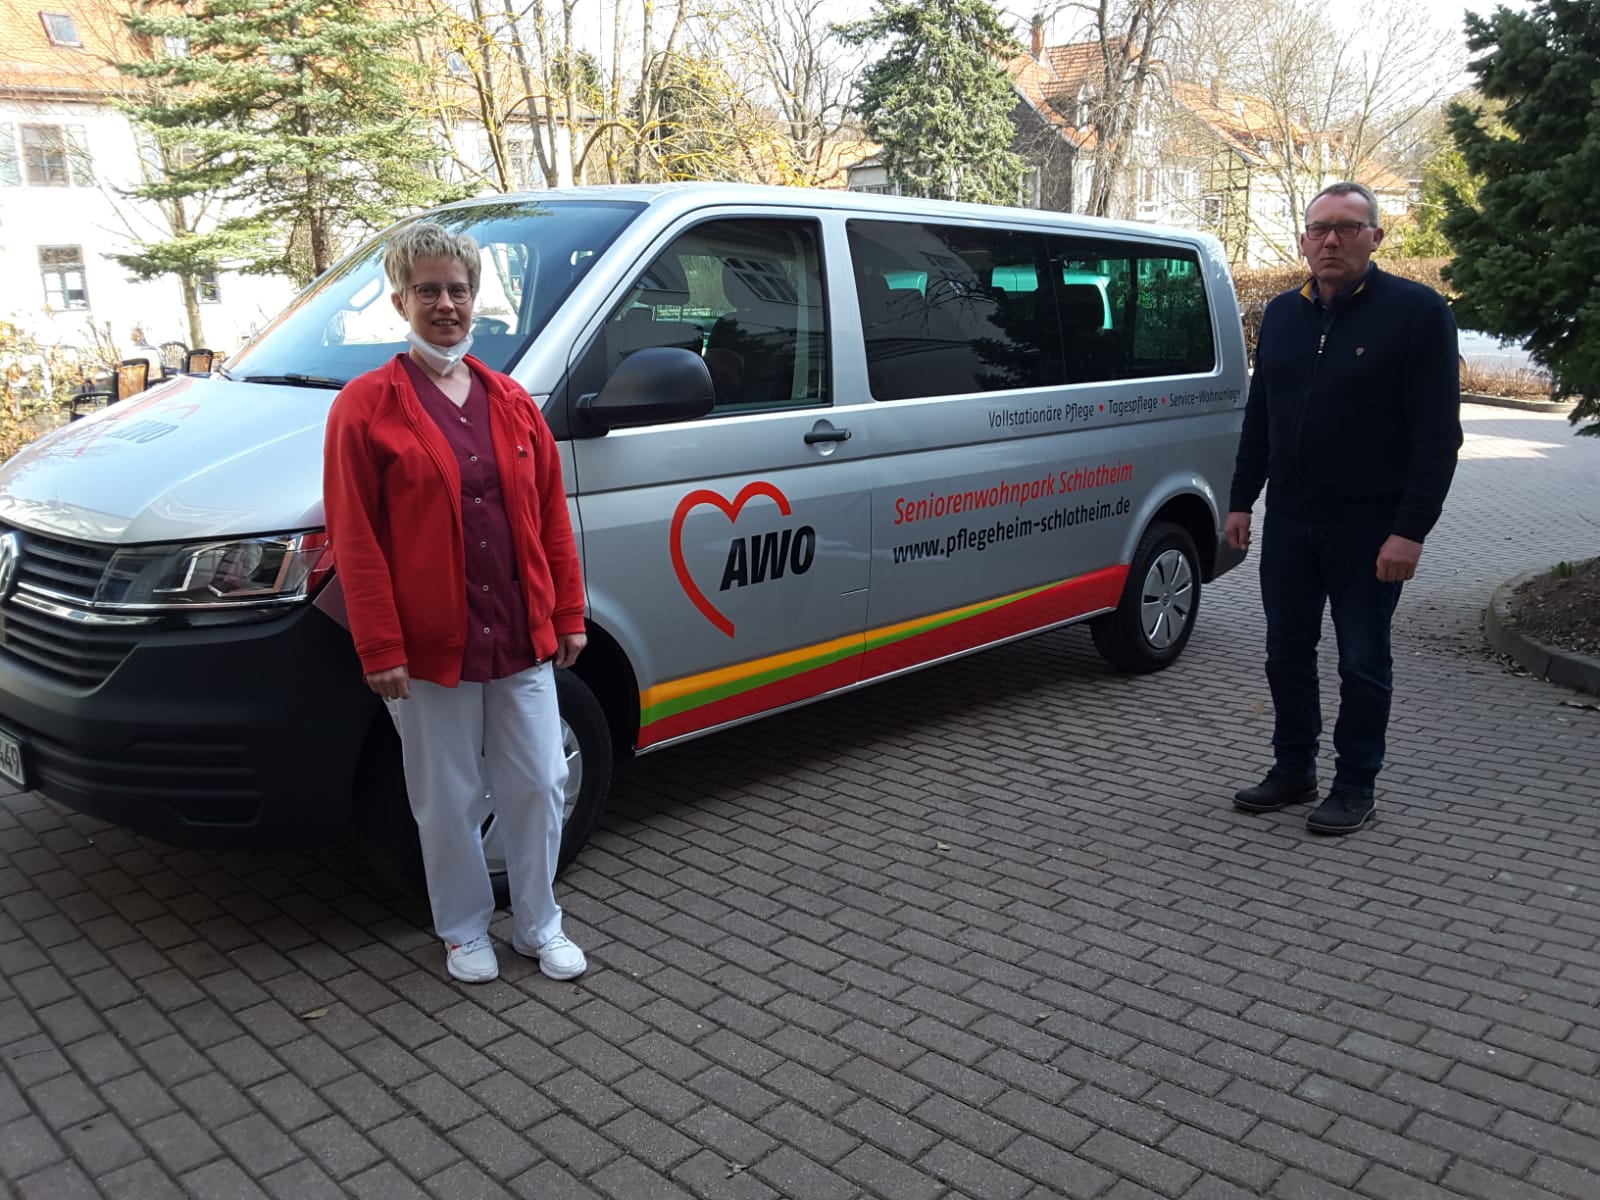 Diana Peter, Leiterin der AWO Tagespflege in Schlotheim, konnte pünktlich zur Wiederöffnung den neuen Bus in Empfang nehmen, persönlich überbracht vom  AJS-Fuhrparkleiter Henning Marks aus der Geschäftsstelle Erfurt